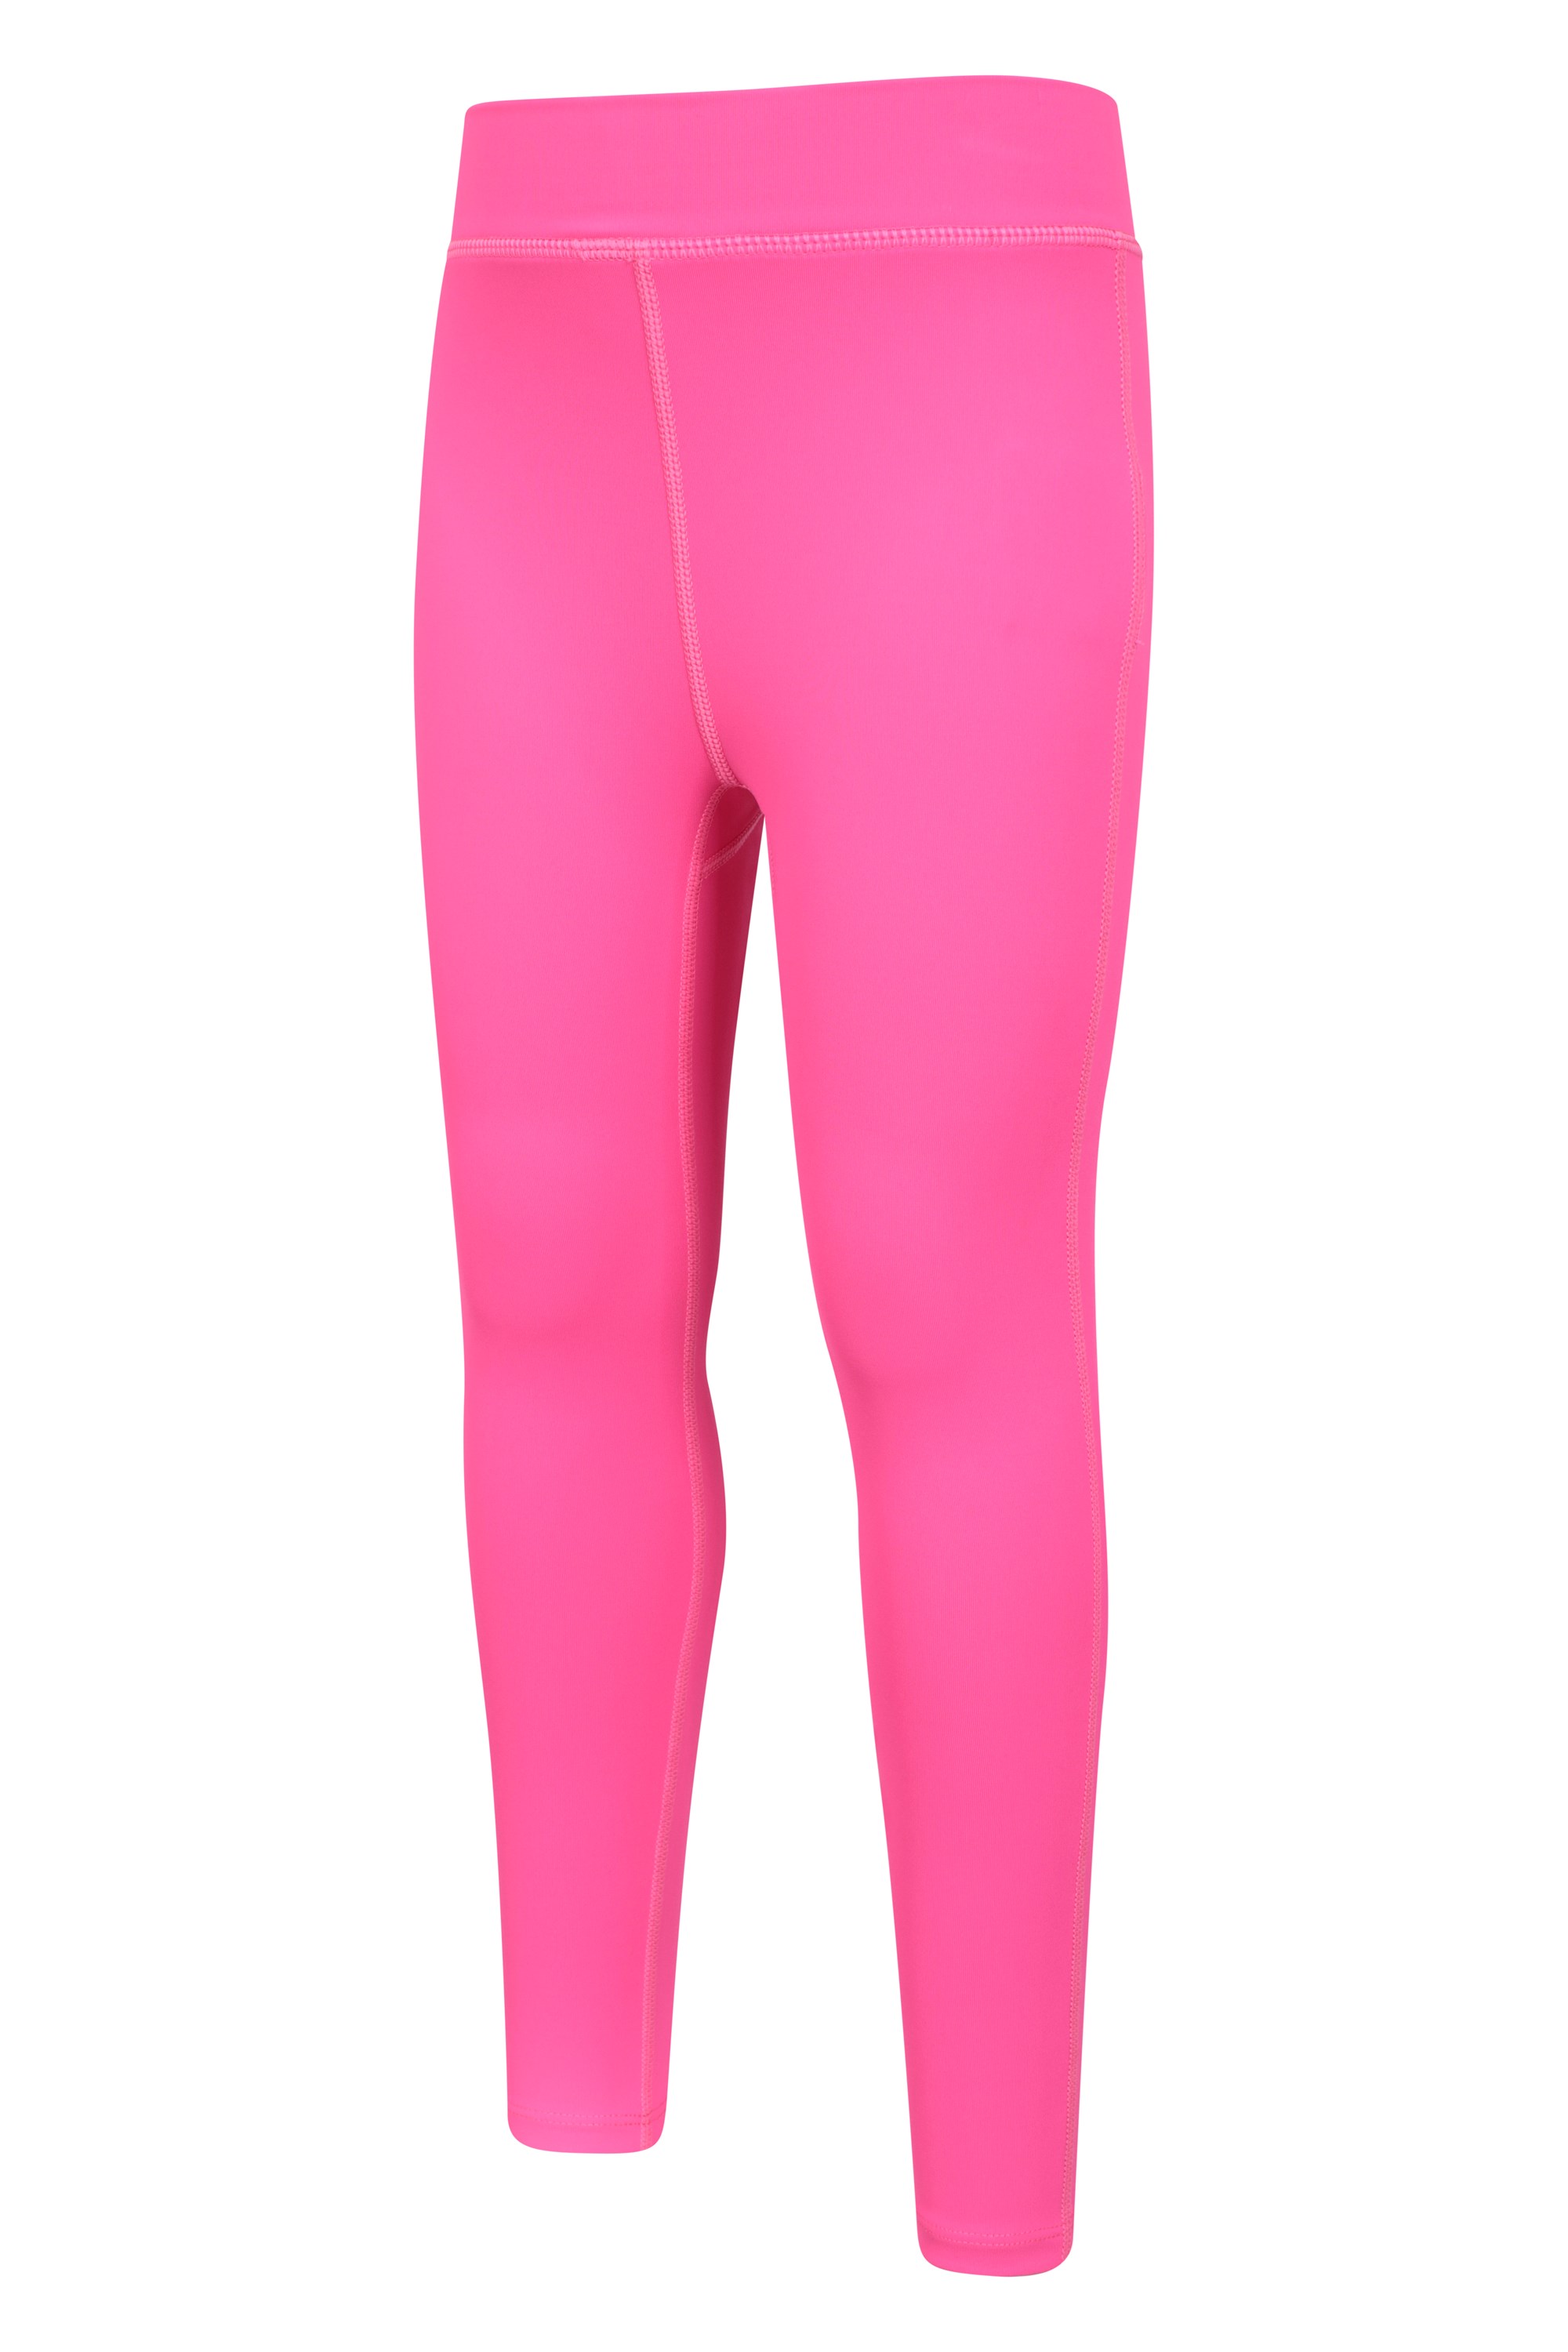 Missguided Ski colorblock leggings in pink